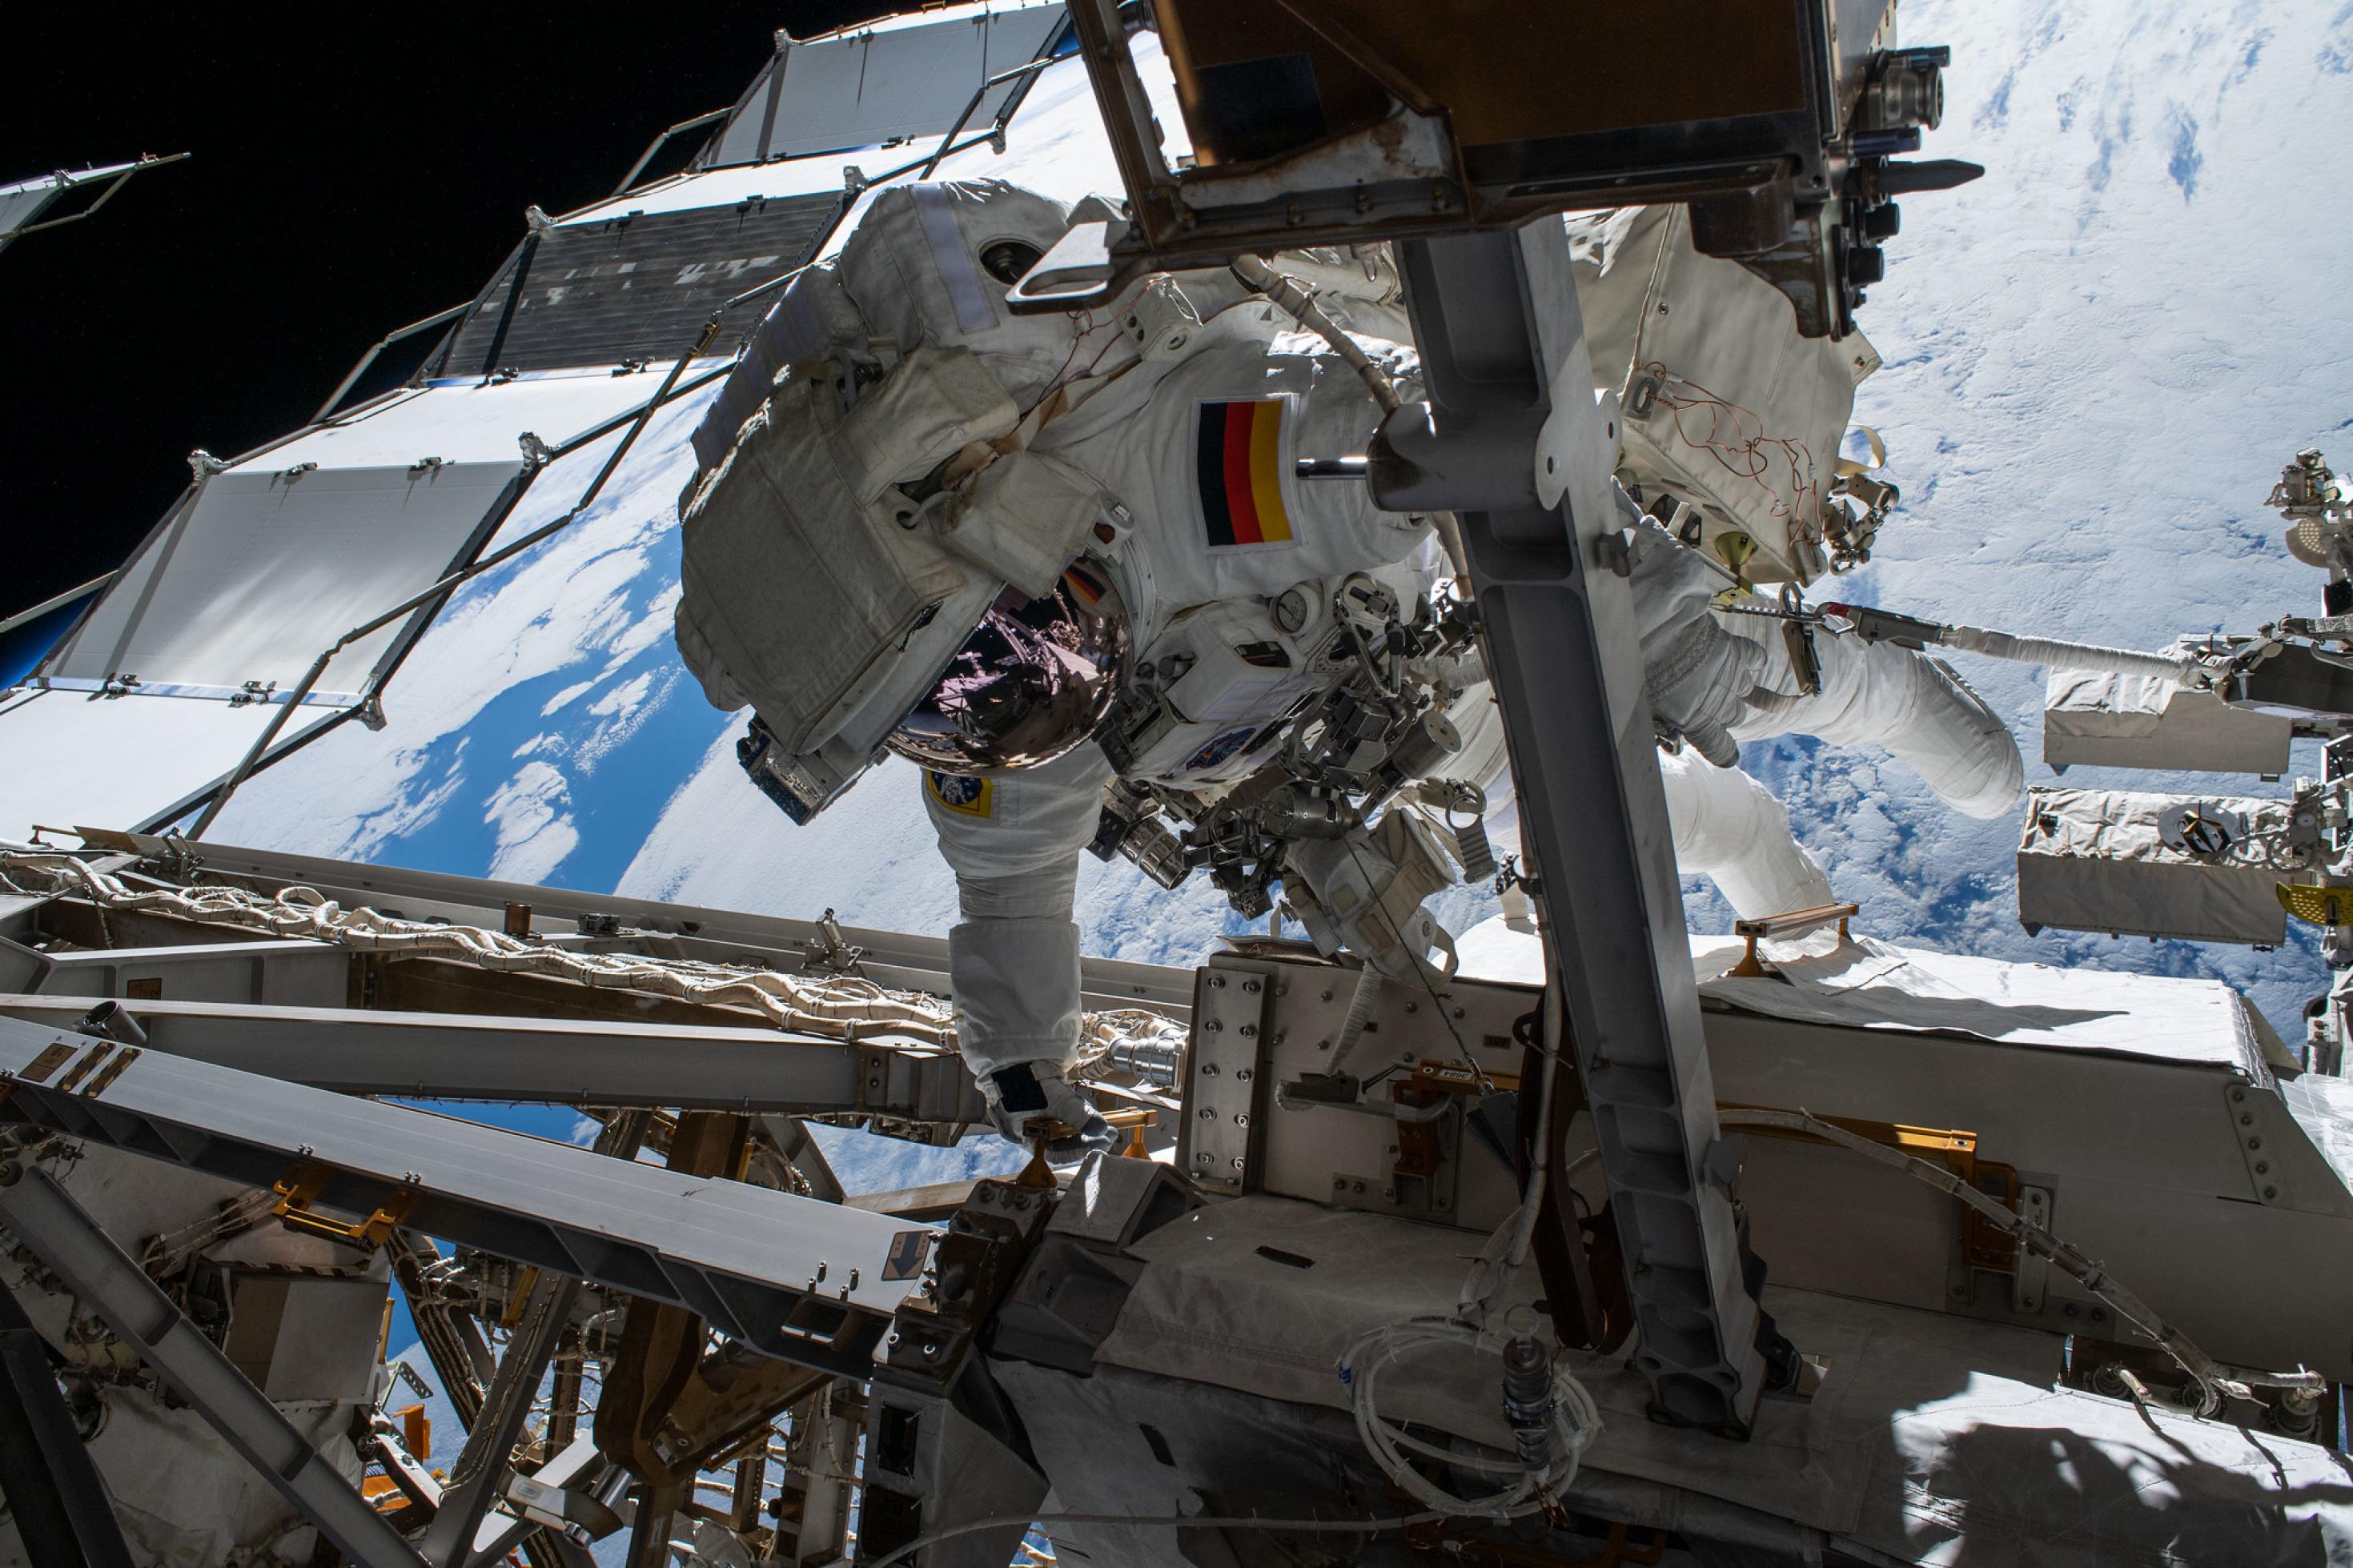 Ein Astronaut im Raumanzug hangelt sich an der Außenkonstruktion der Internationalen Raumstation entlang. Im Hintergrund ist ein Ausschnitt der wolkenbedeckten Erde zu sehen.